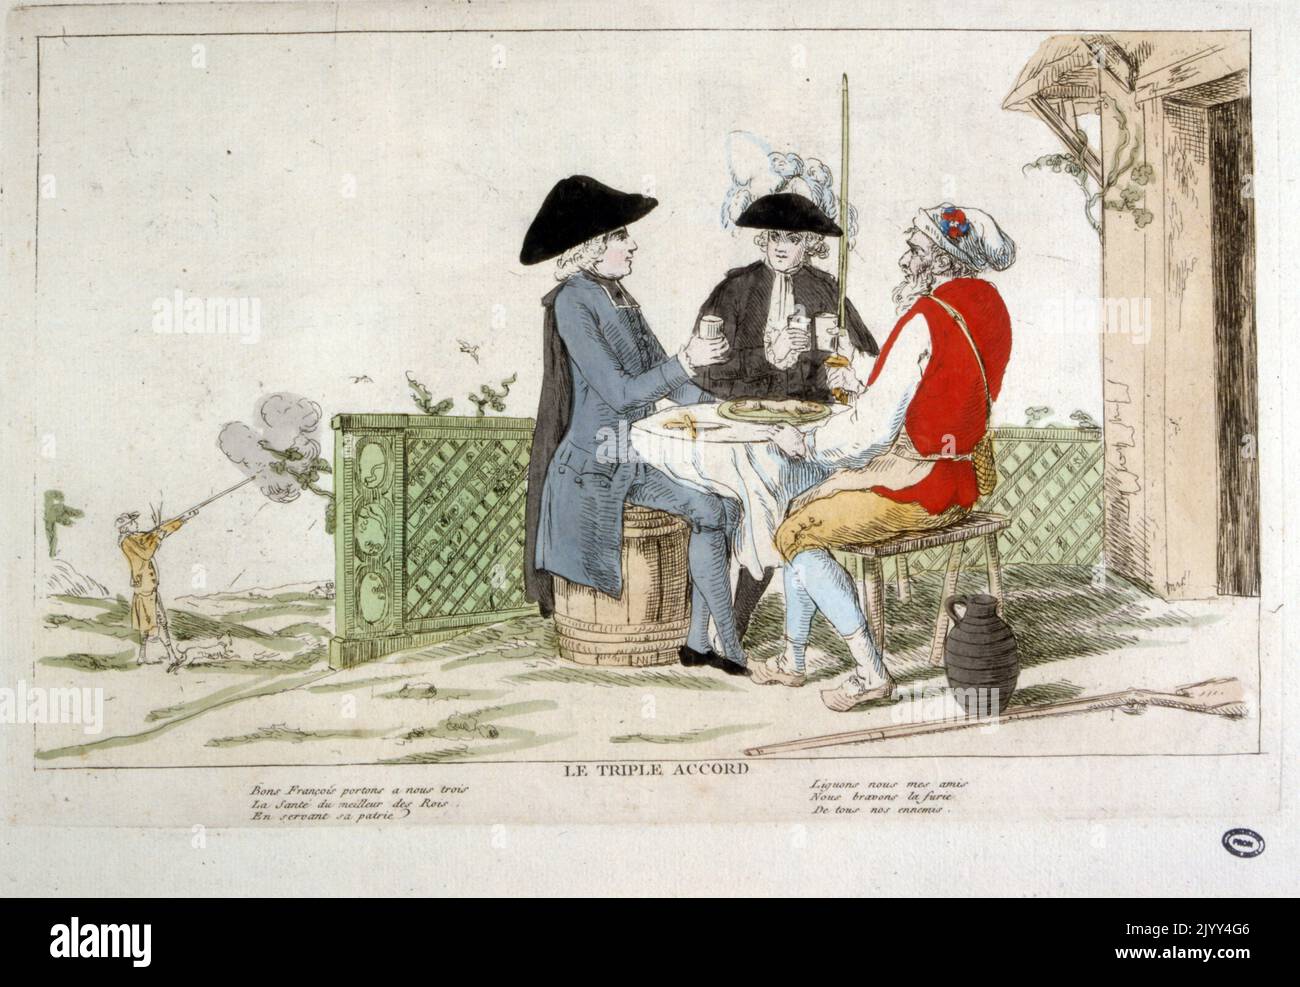 Immagine della Rivoluzione francese del 1789 che illustra il 'triplo accordo' (riunione) tra i tre vecchi ordini. Sullo sfondo, il cacciatore simboleggia la soppressione del diritto alla caccia. Foto Stock